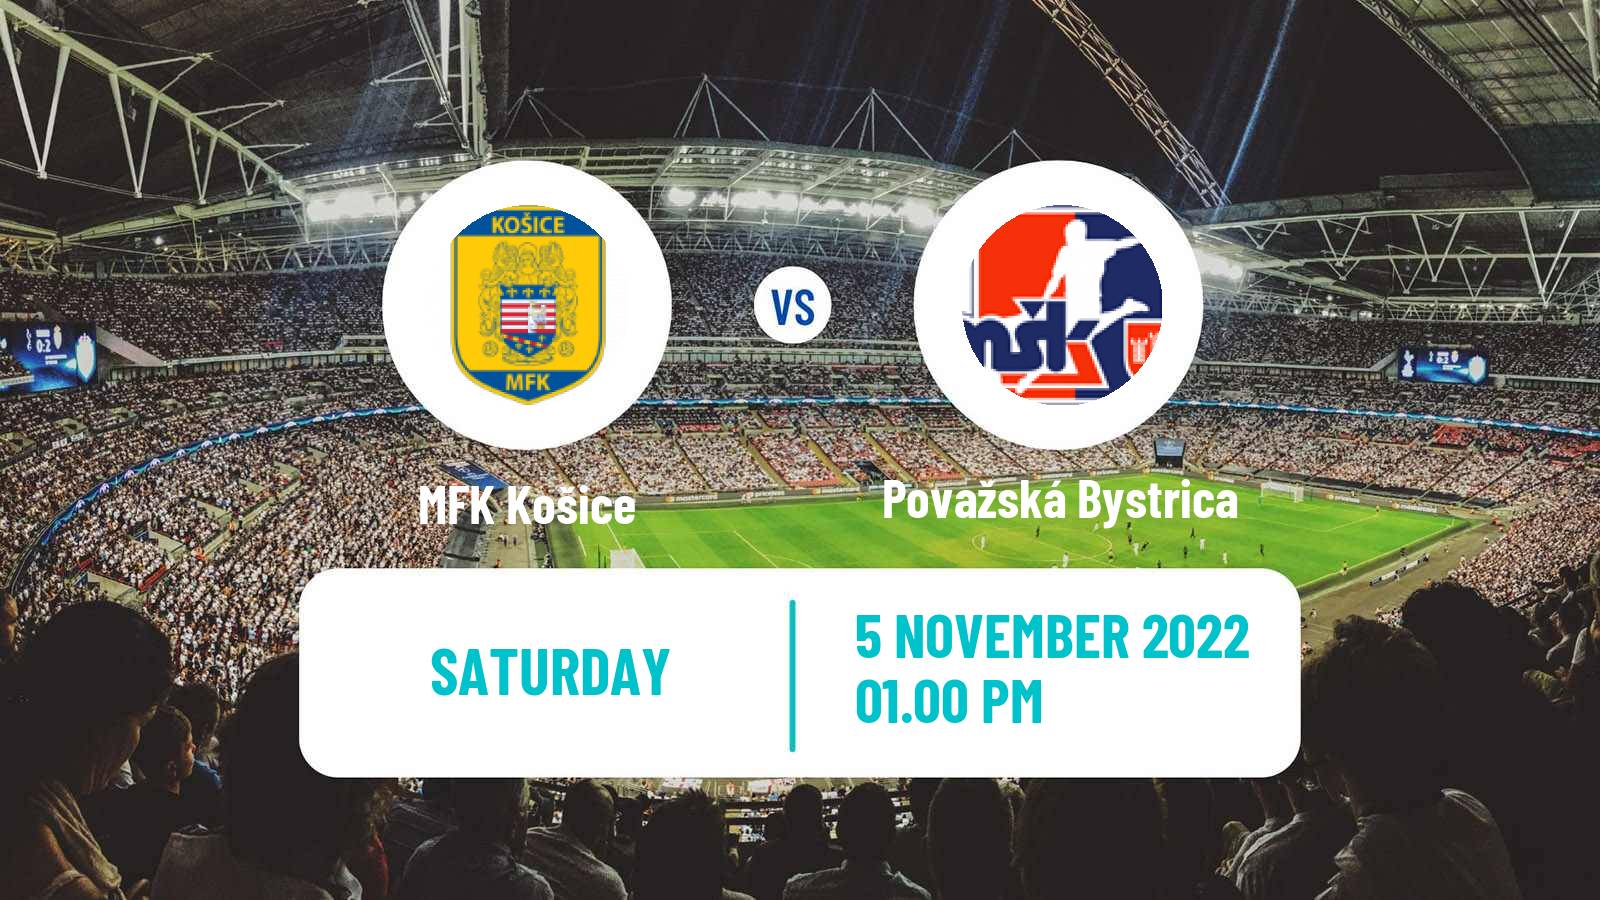 Soccer Slovak 2 Liga MFK Košice - Považská Bystrica